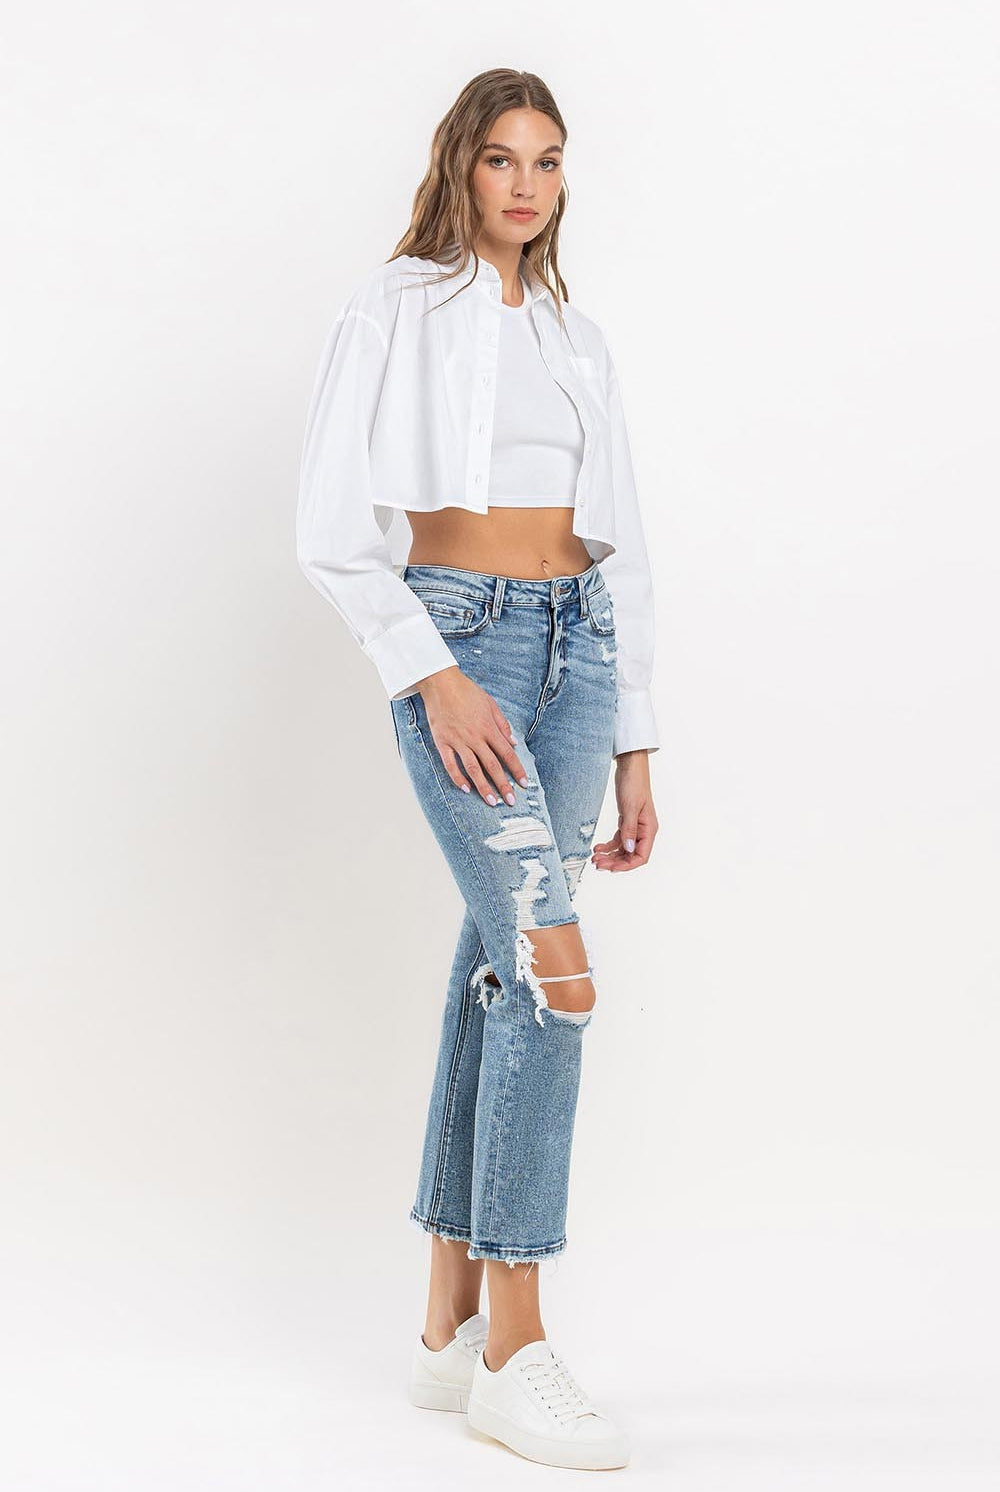 White Smoke Lovervet Full Size High Rise Slim Straight Jeans Denim